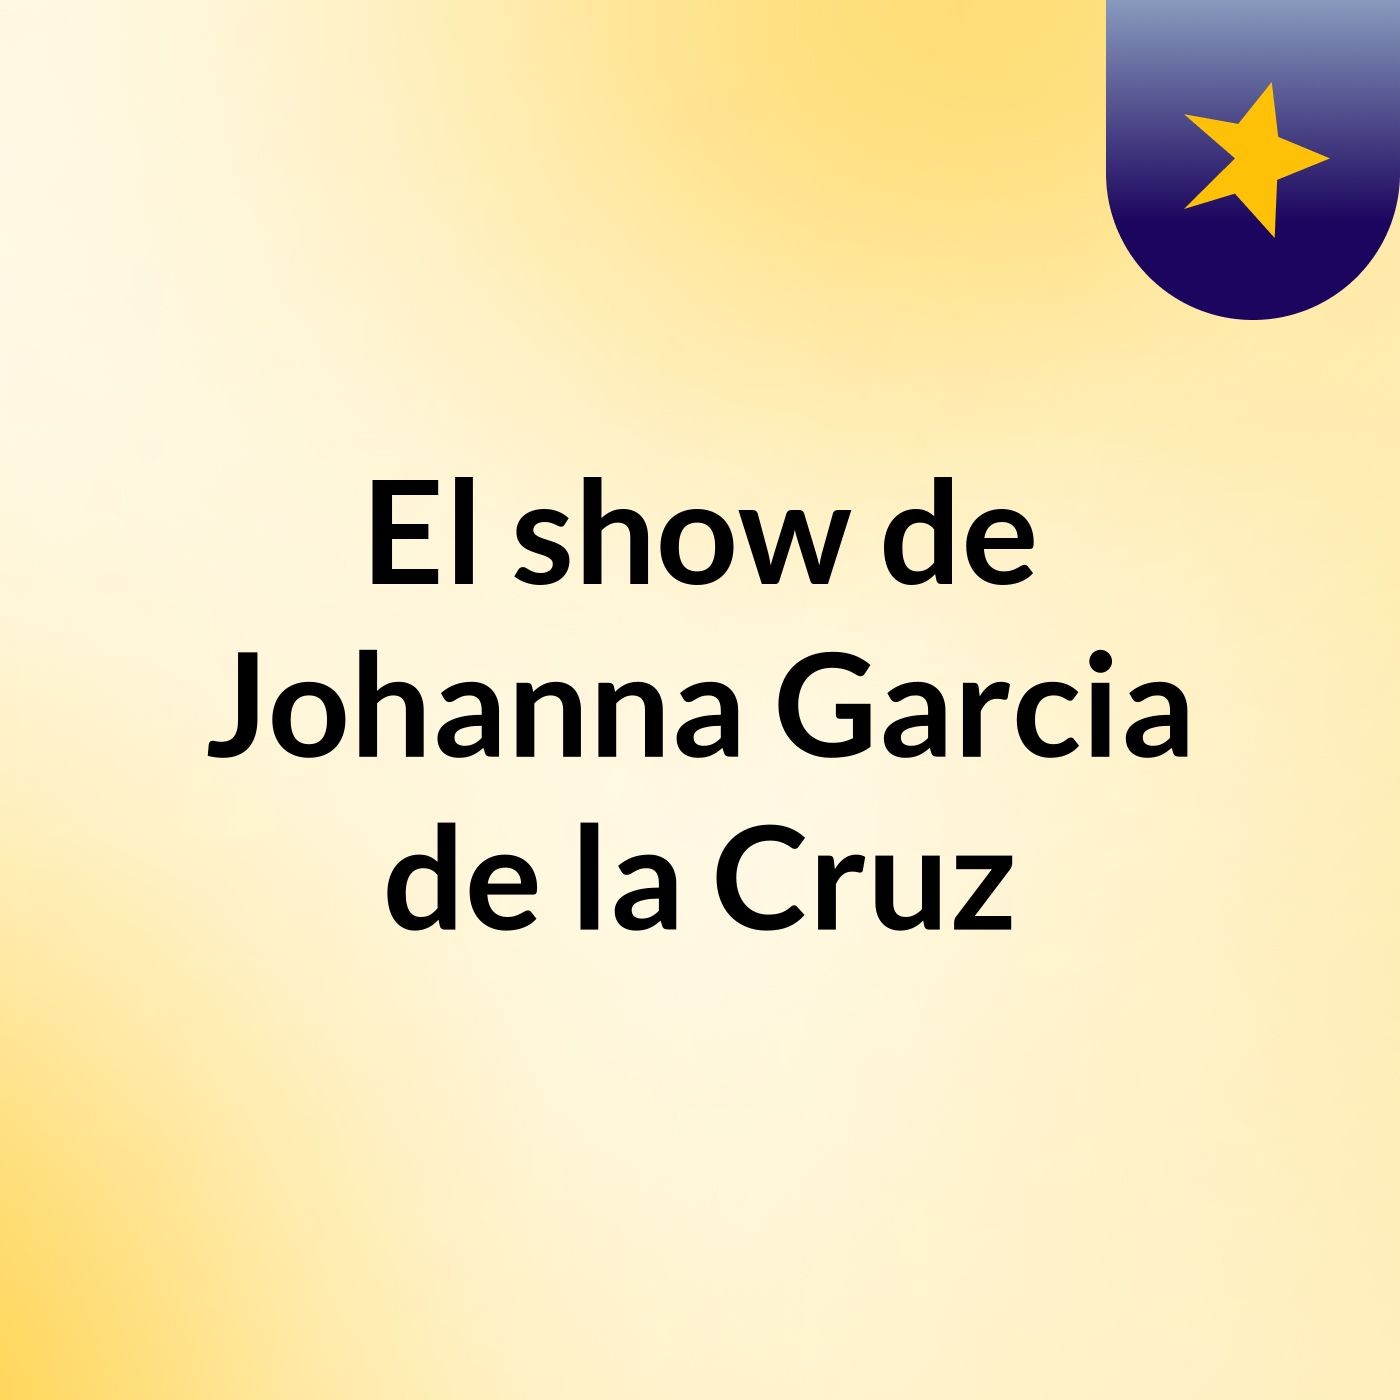 El show de Johanna Garcia de la Cruz